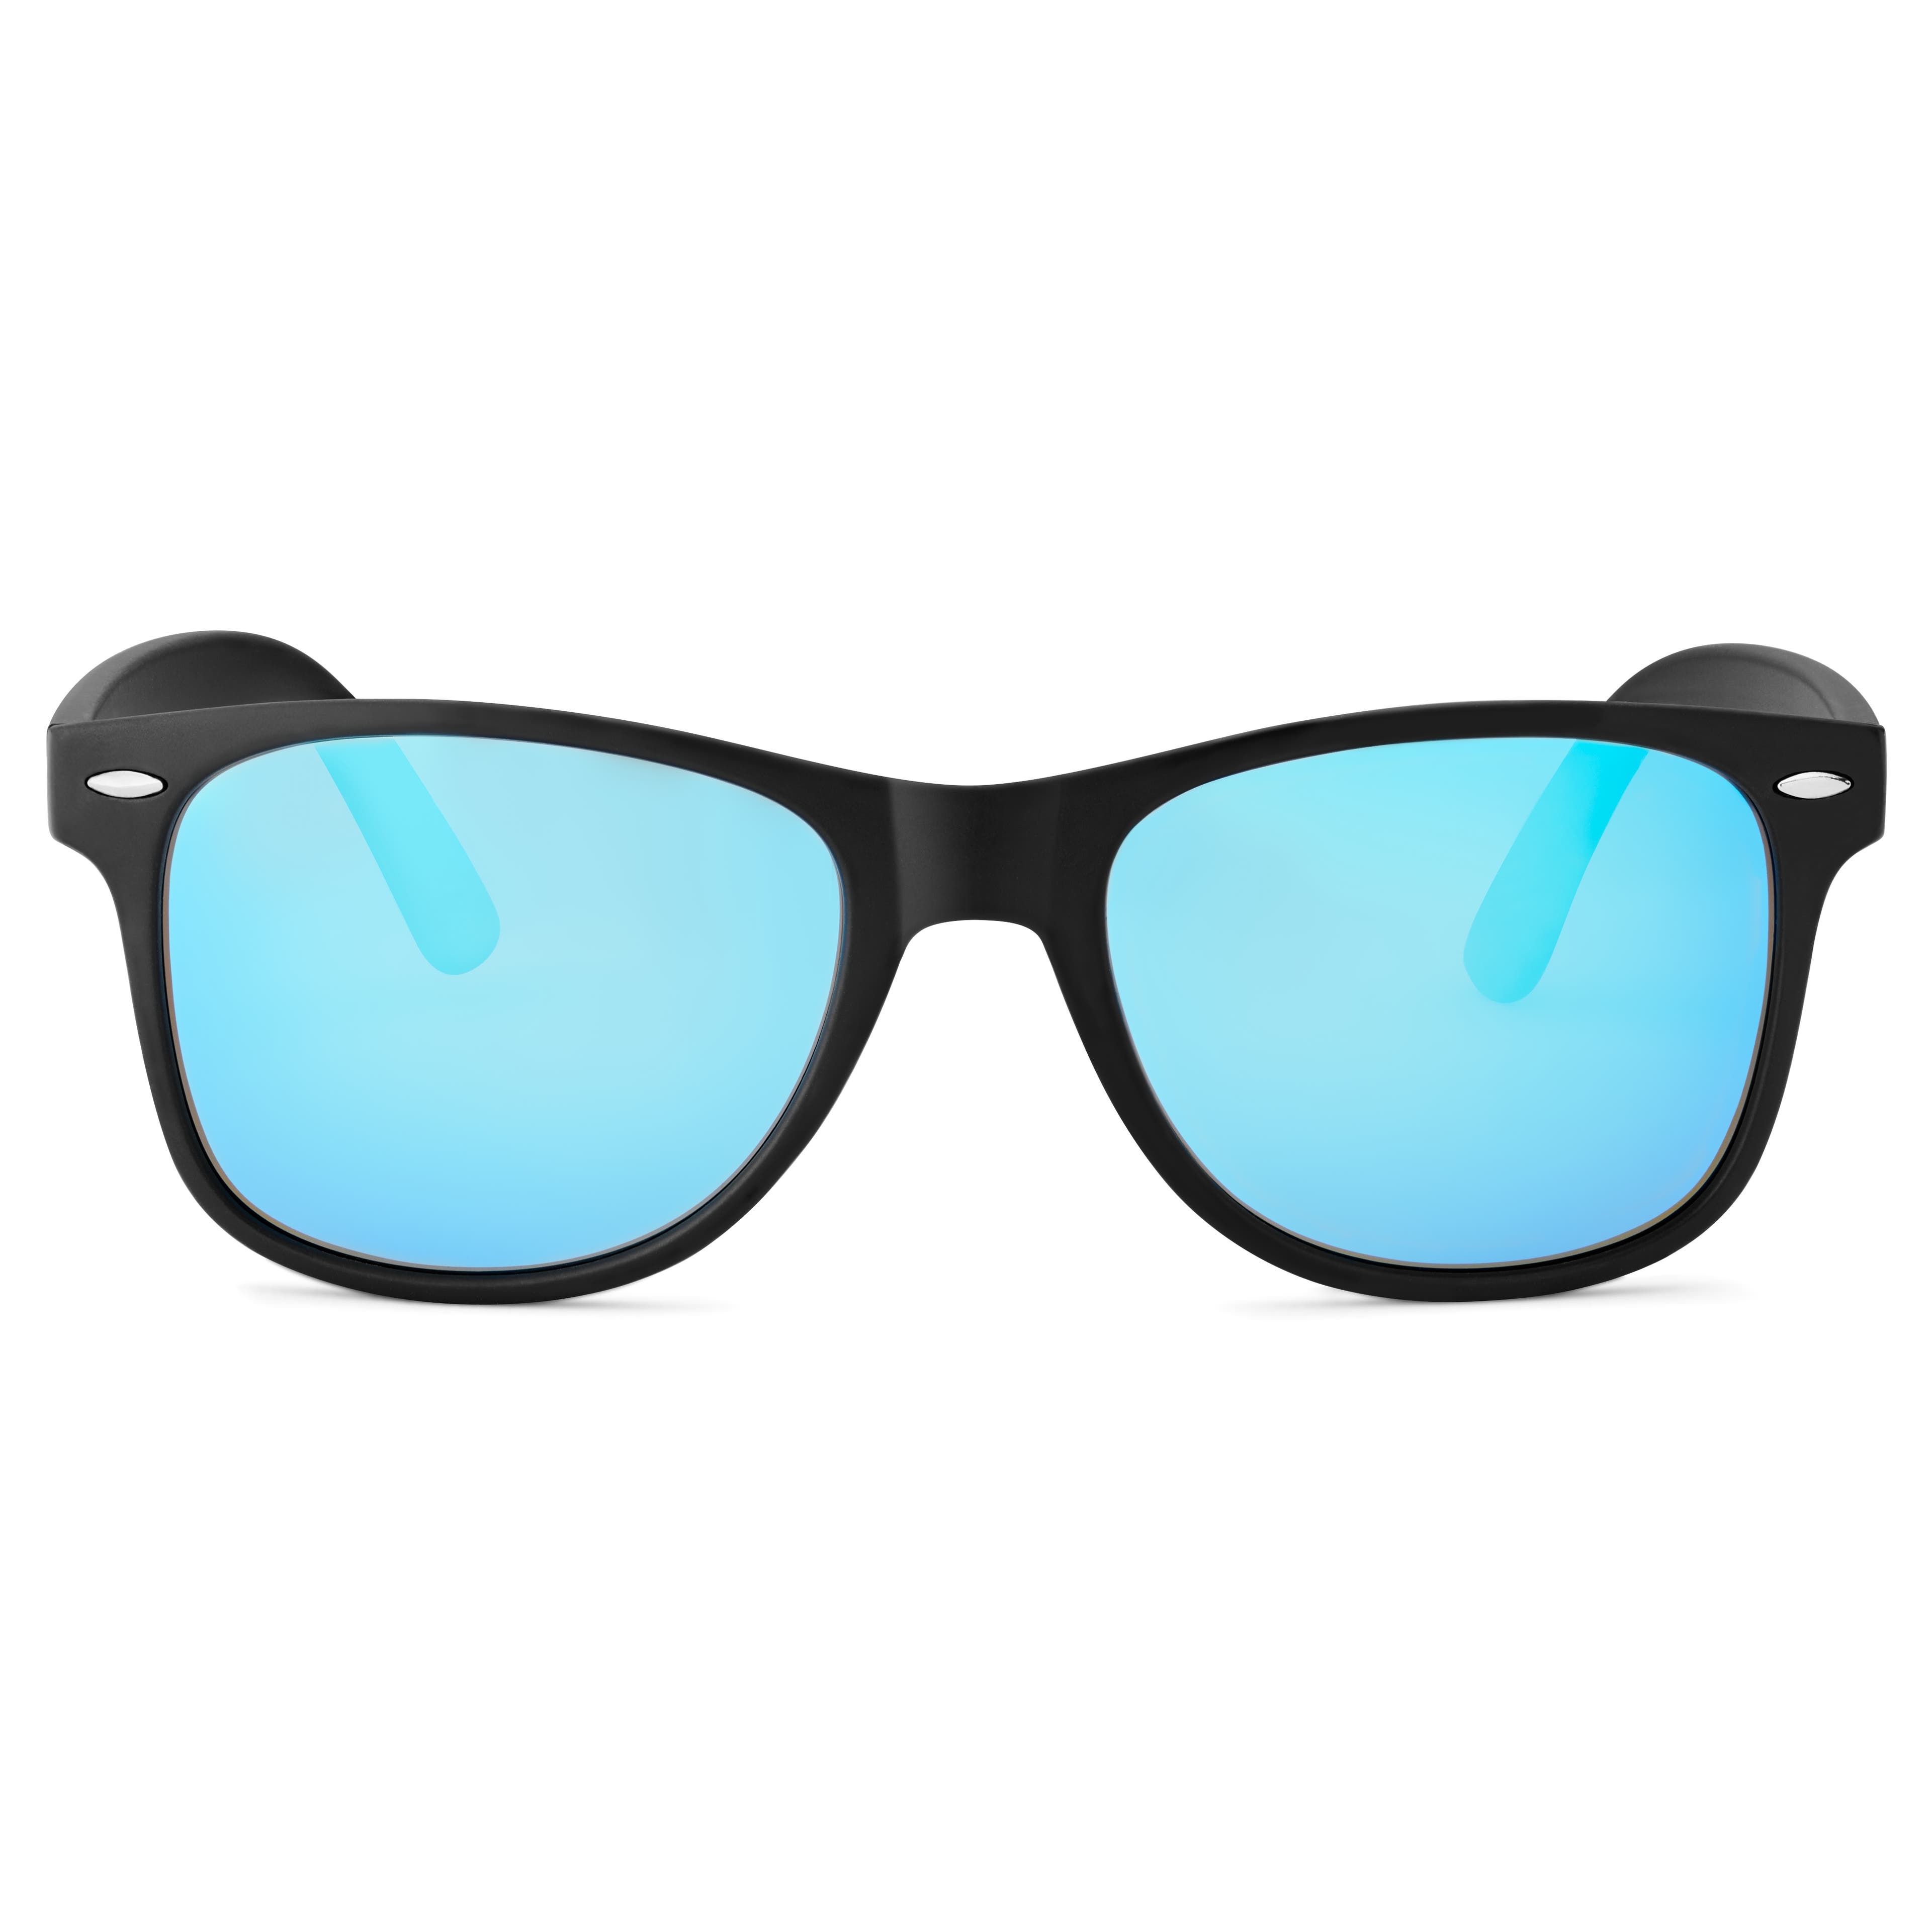 Black & Blue Polarised Retro Sunglasses